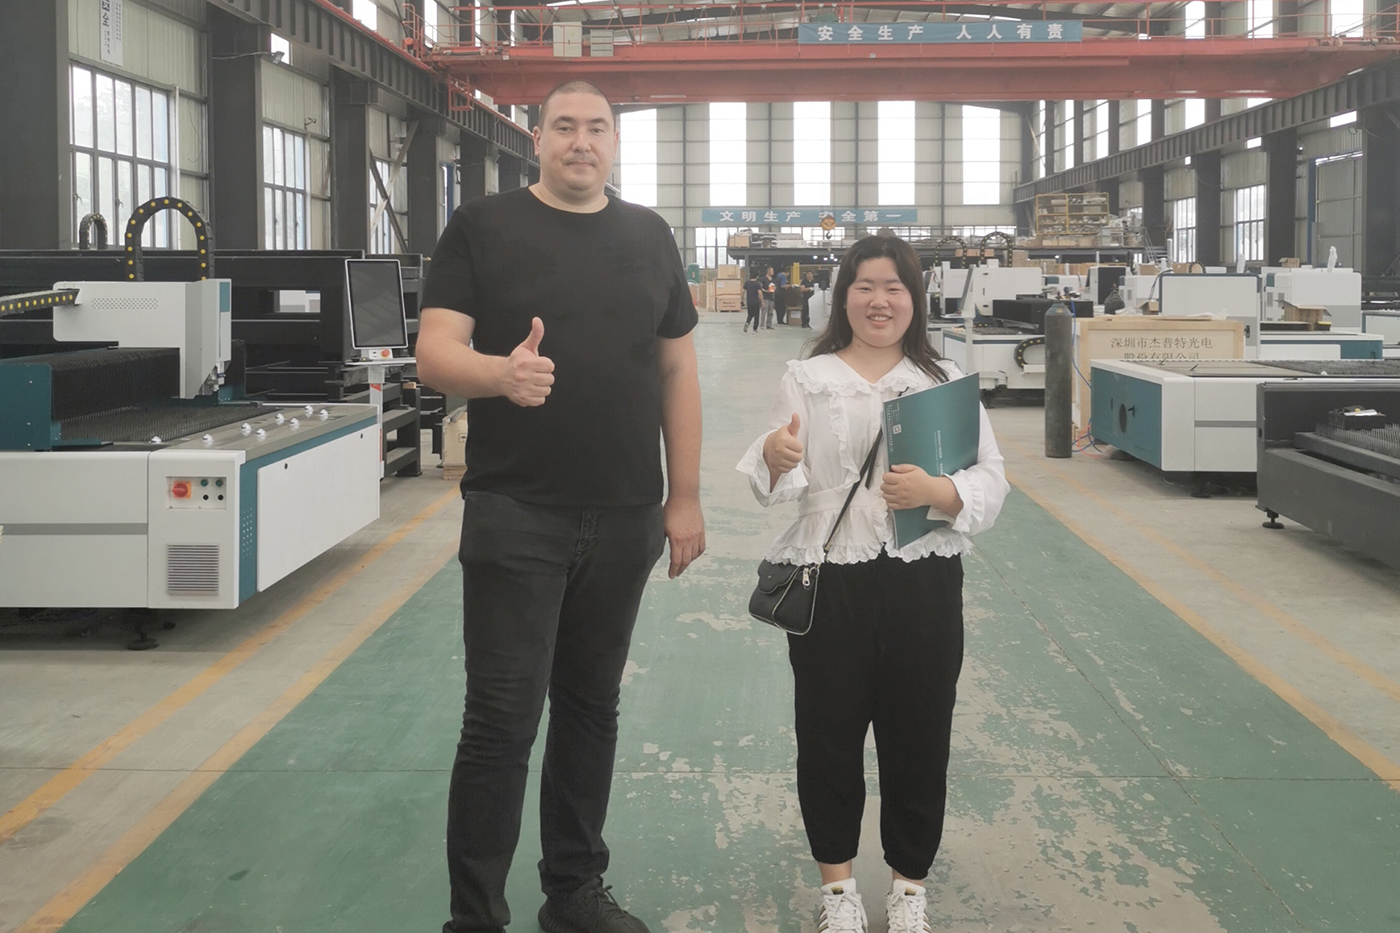 Ryska vänner hjälper kazakiska kunder att besöka fabriken 2